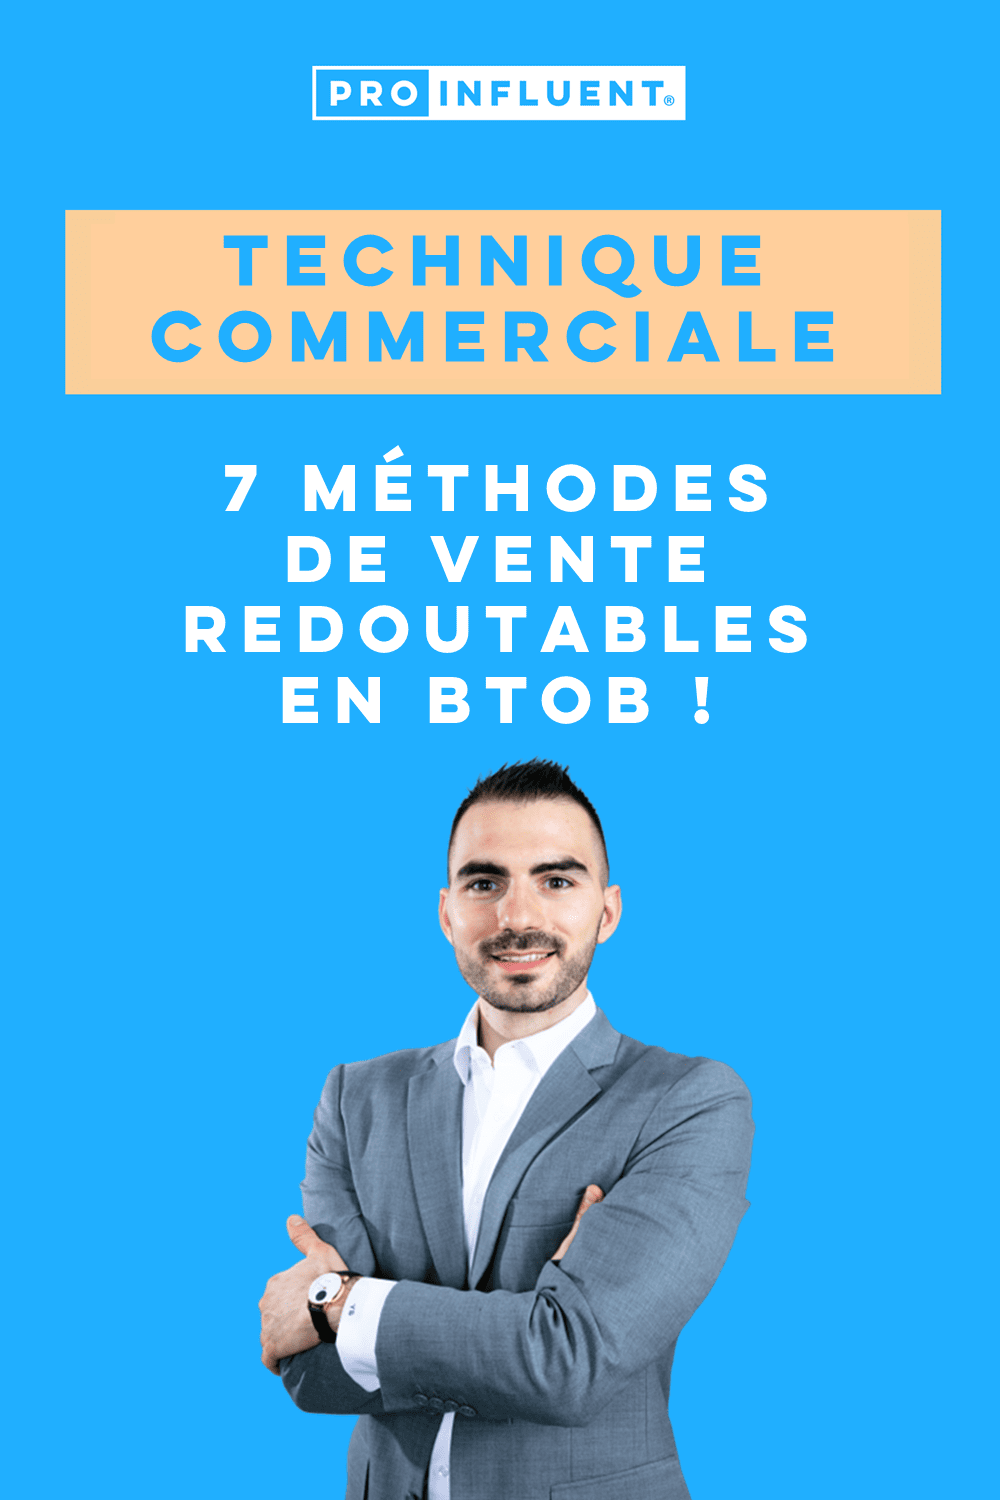 Tecnica commerciale: 7 formidabili metodi di vendita in BtoB!